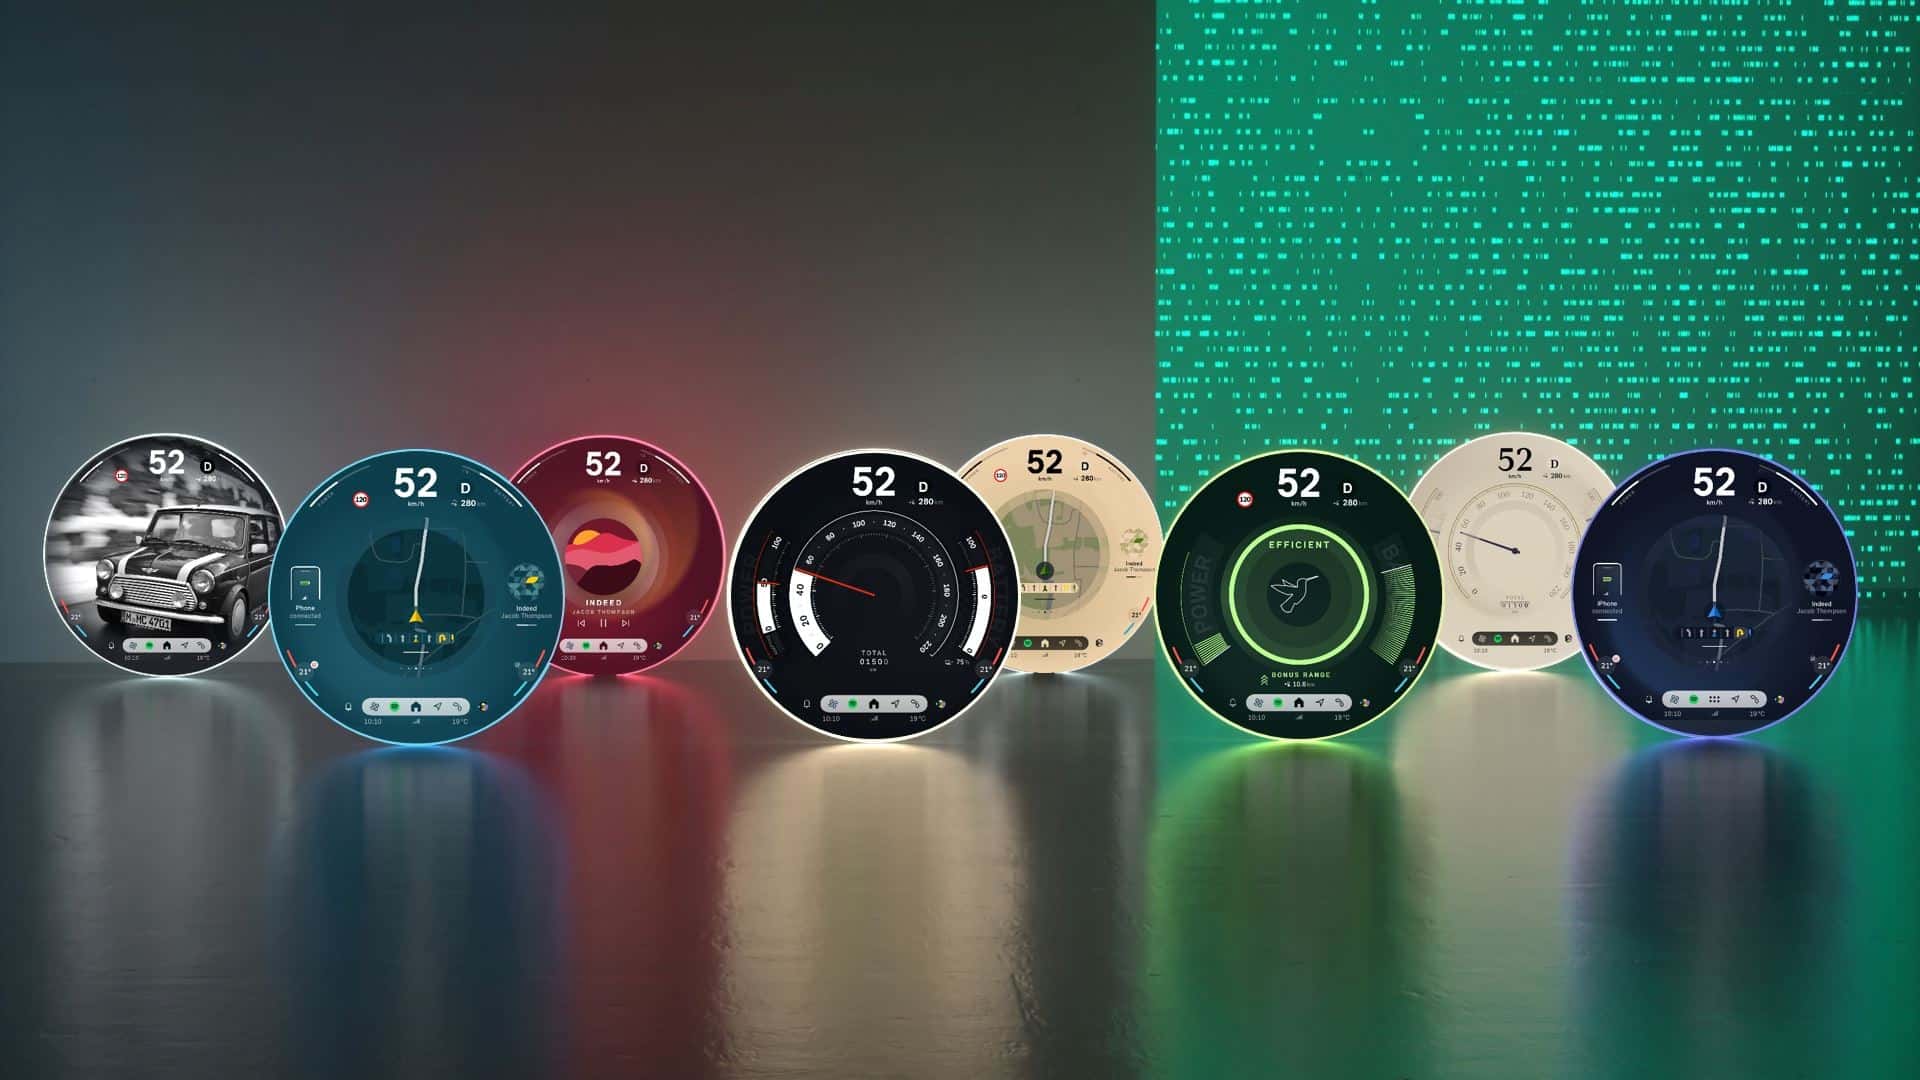 الألوان المختلفة للشاشة الدائئرية بتقنية أوليد